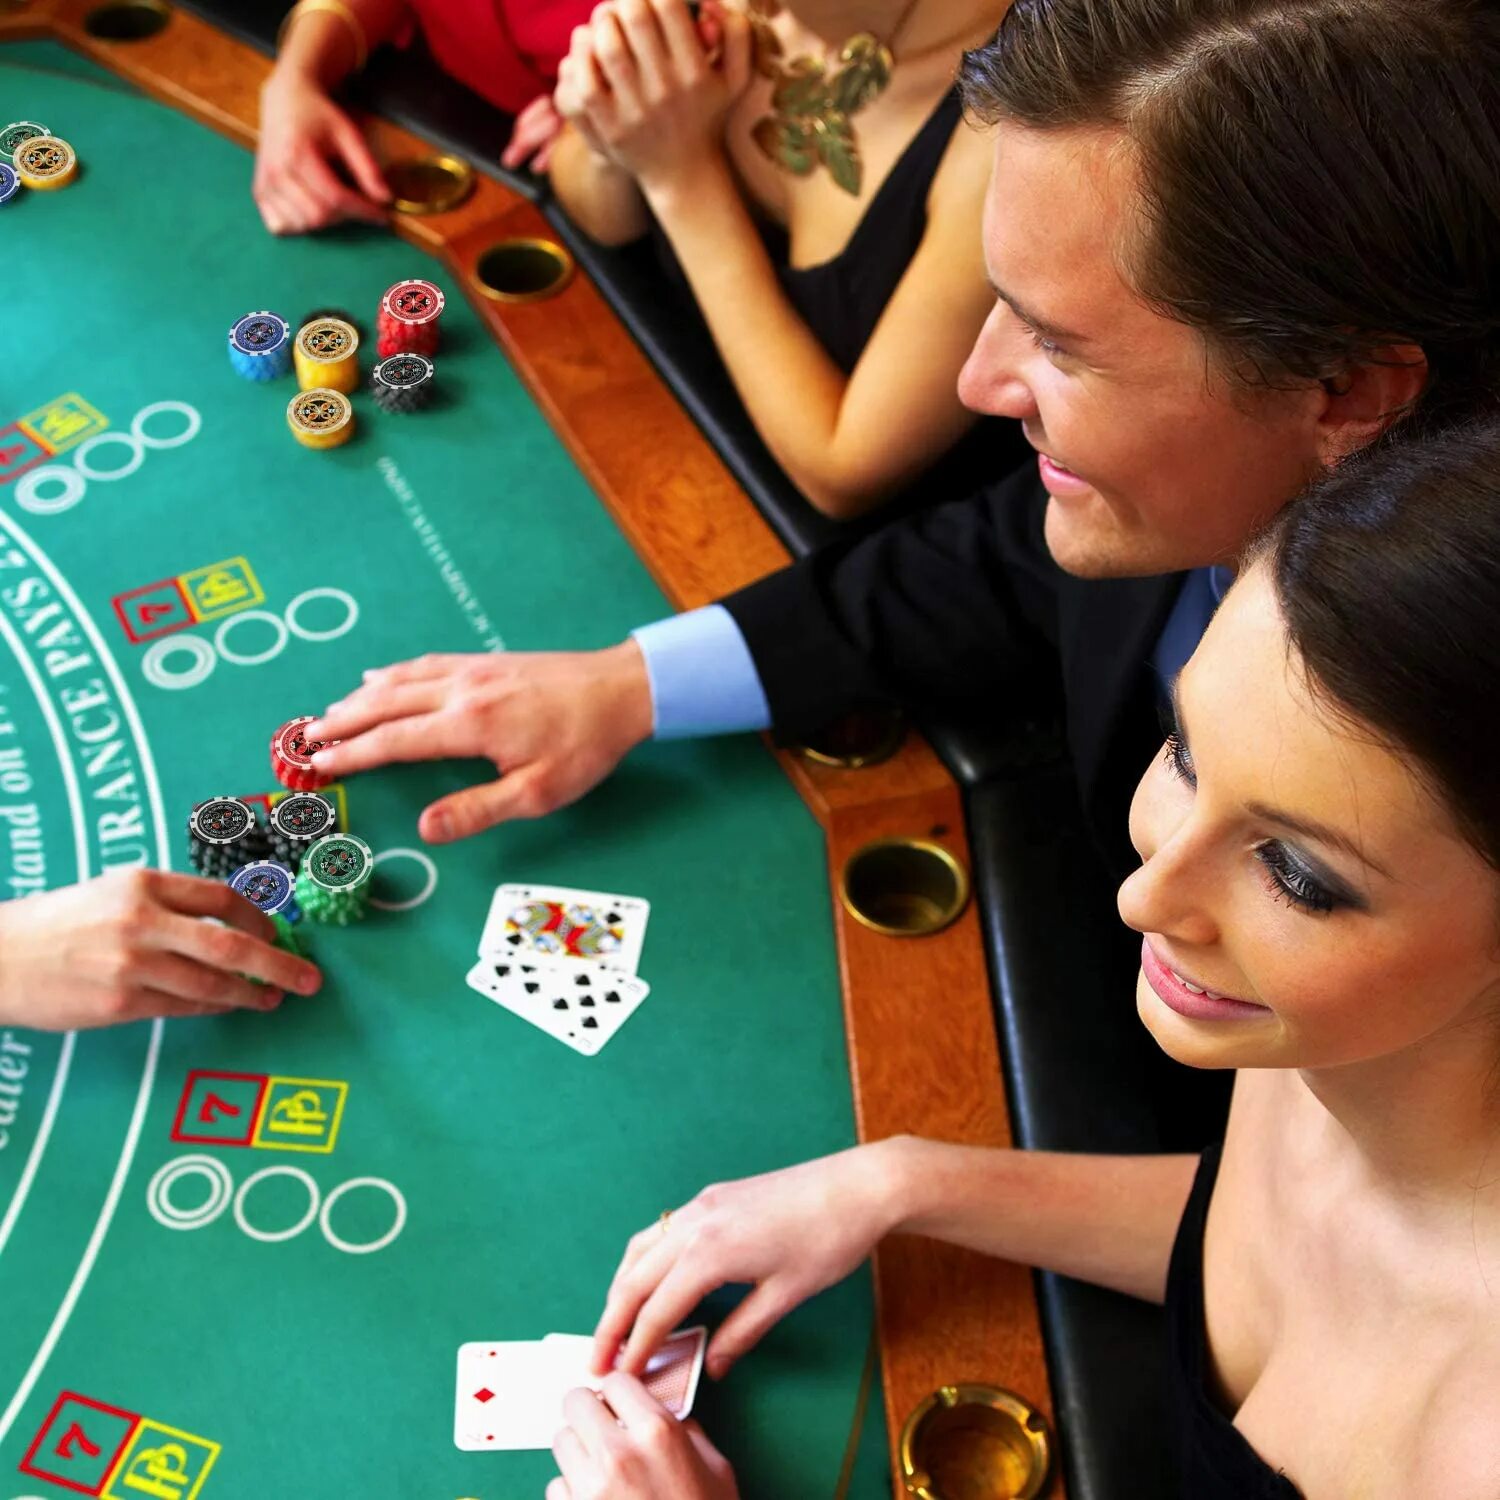 Сыграть в азартную игру. Азартные игры. Люди в казино. Люди играющие в казино. Казино Покер.